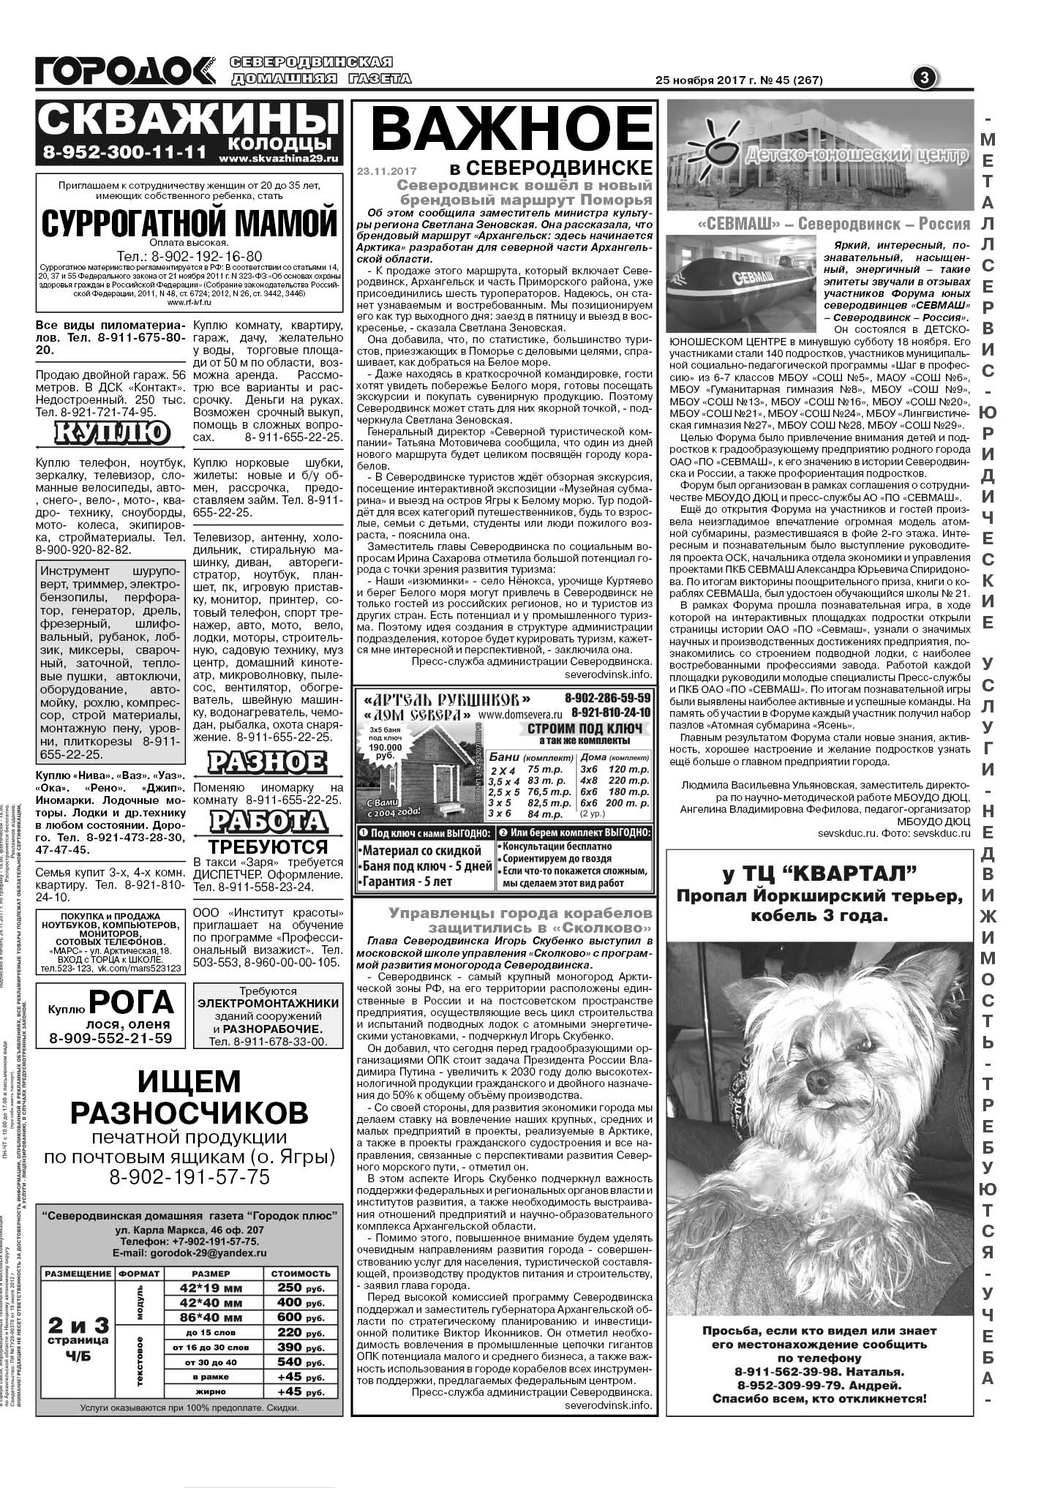 Городок плюс, выпуск номер 45 от 25 ноября 2017 года, страница 3.